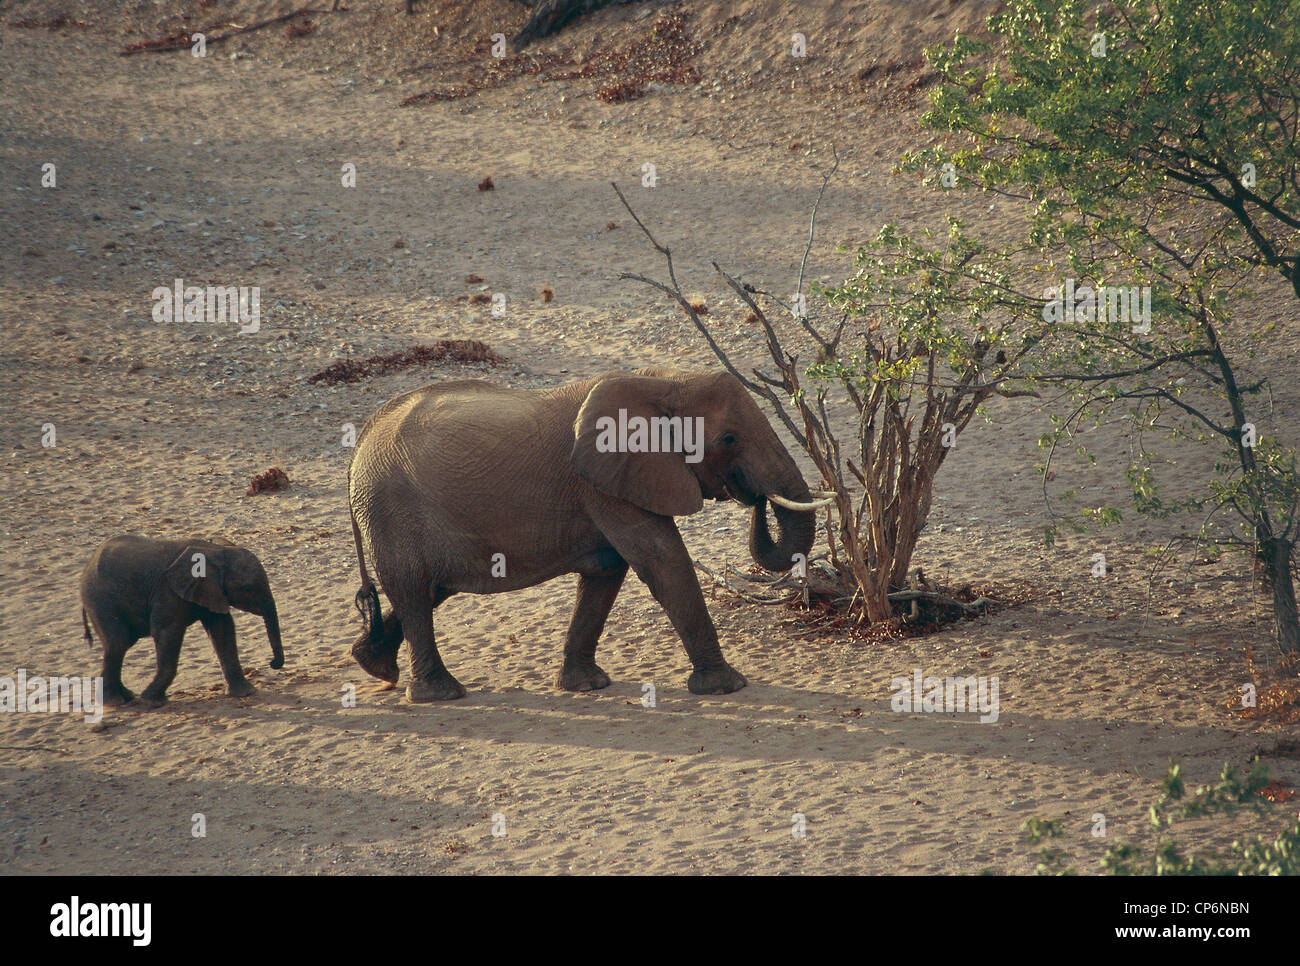 Zoologie - Säugetiere Proboscideans - mit einem kleinen afrikanischen Elefanten (Loxodonta Africana). Namibia, Damaraland Wildnisgebiet Stockfoto